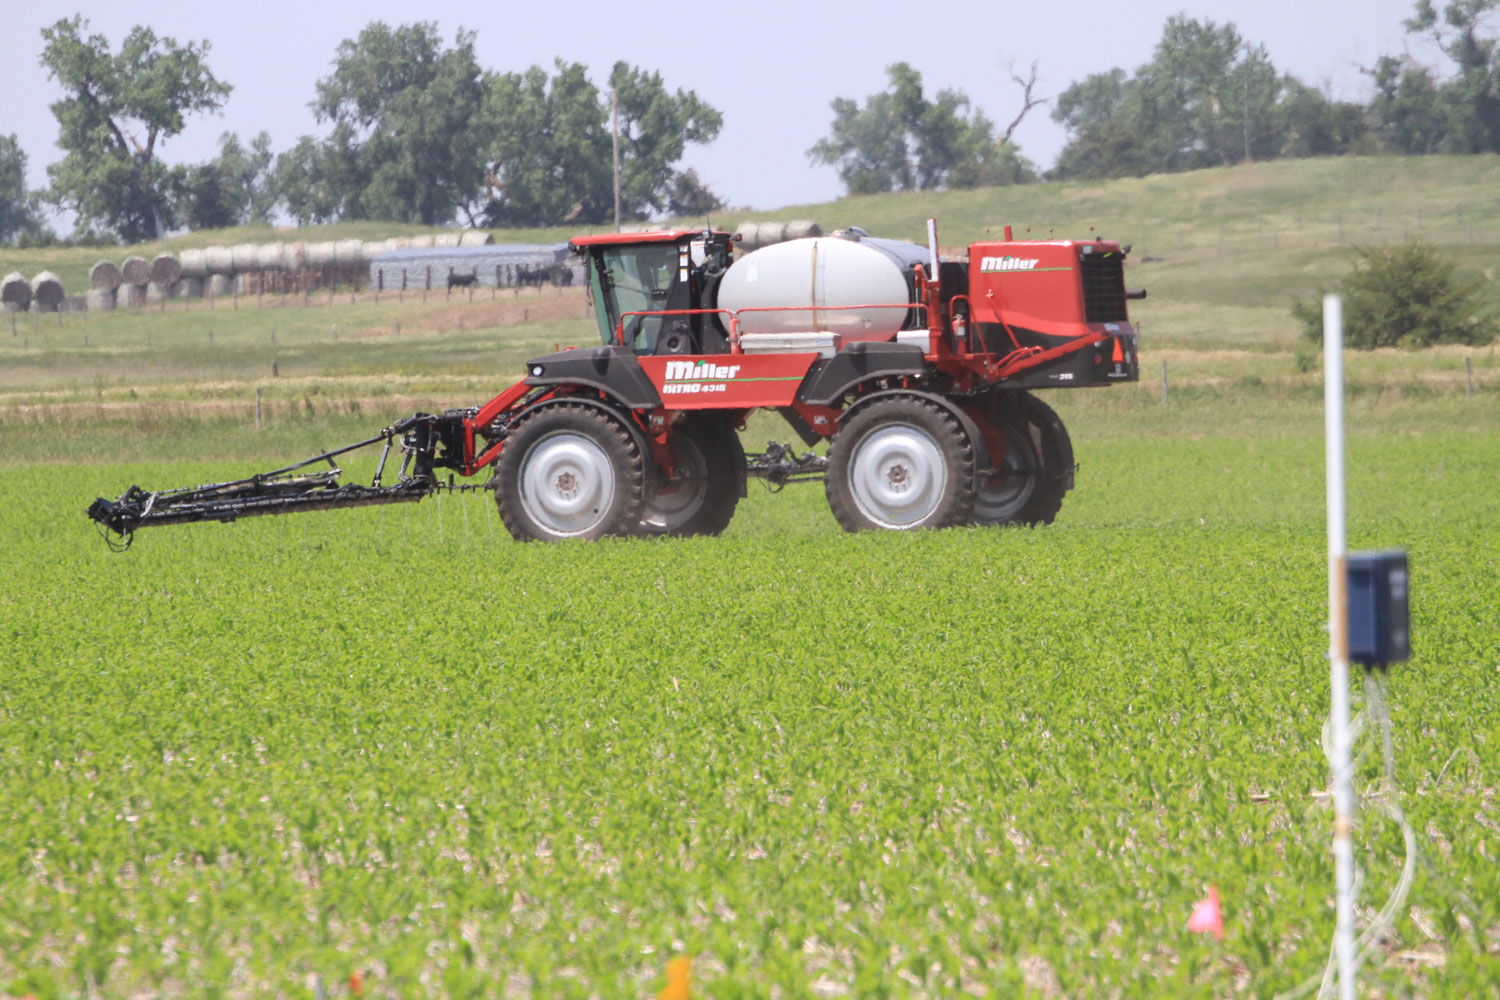  nitrogen applicator in the field